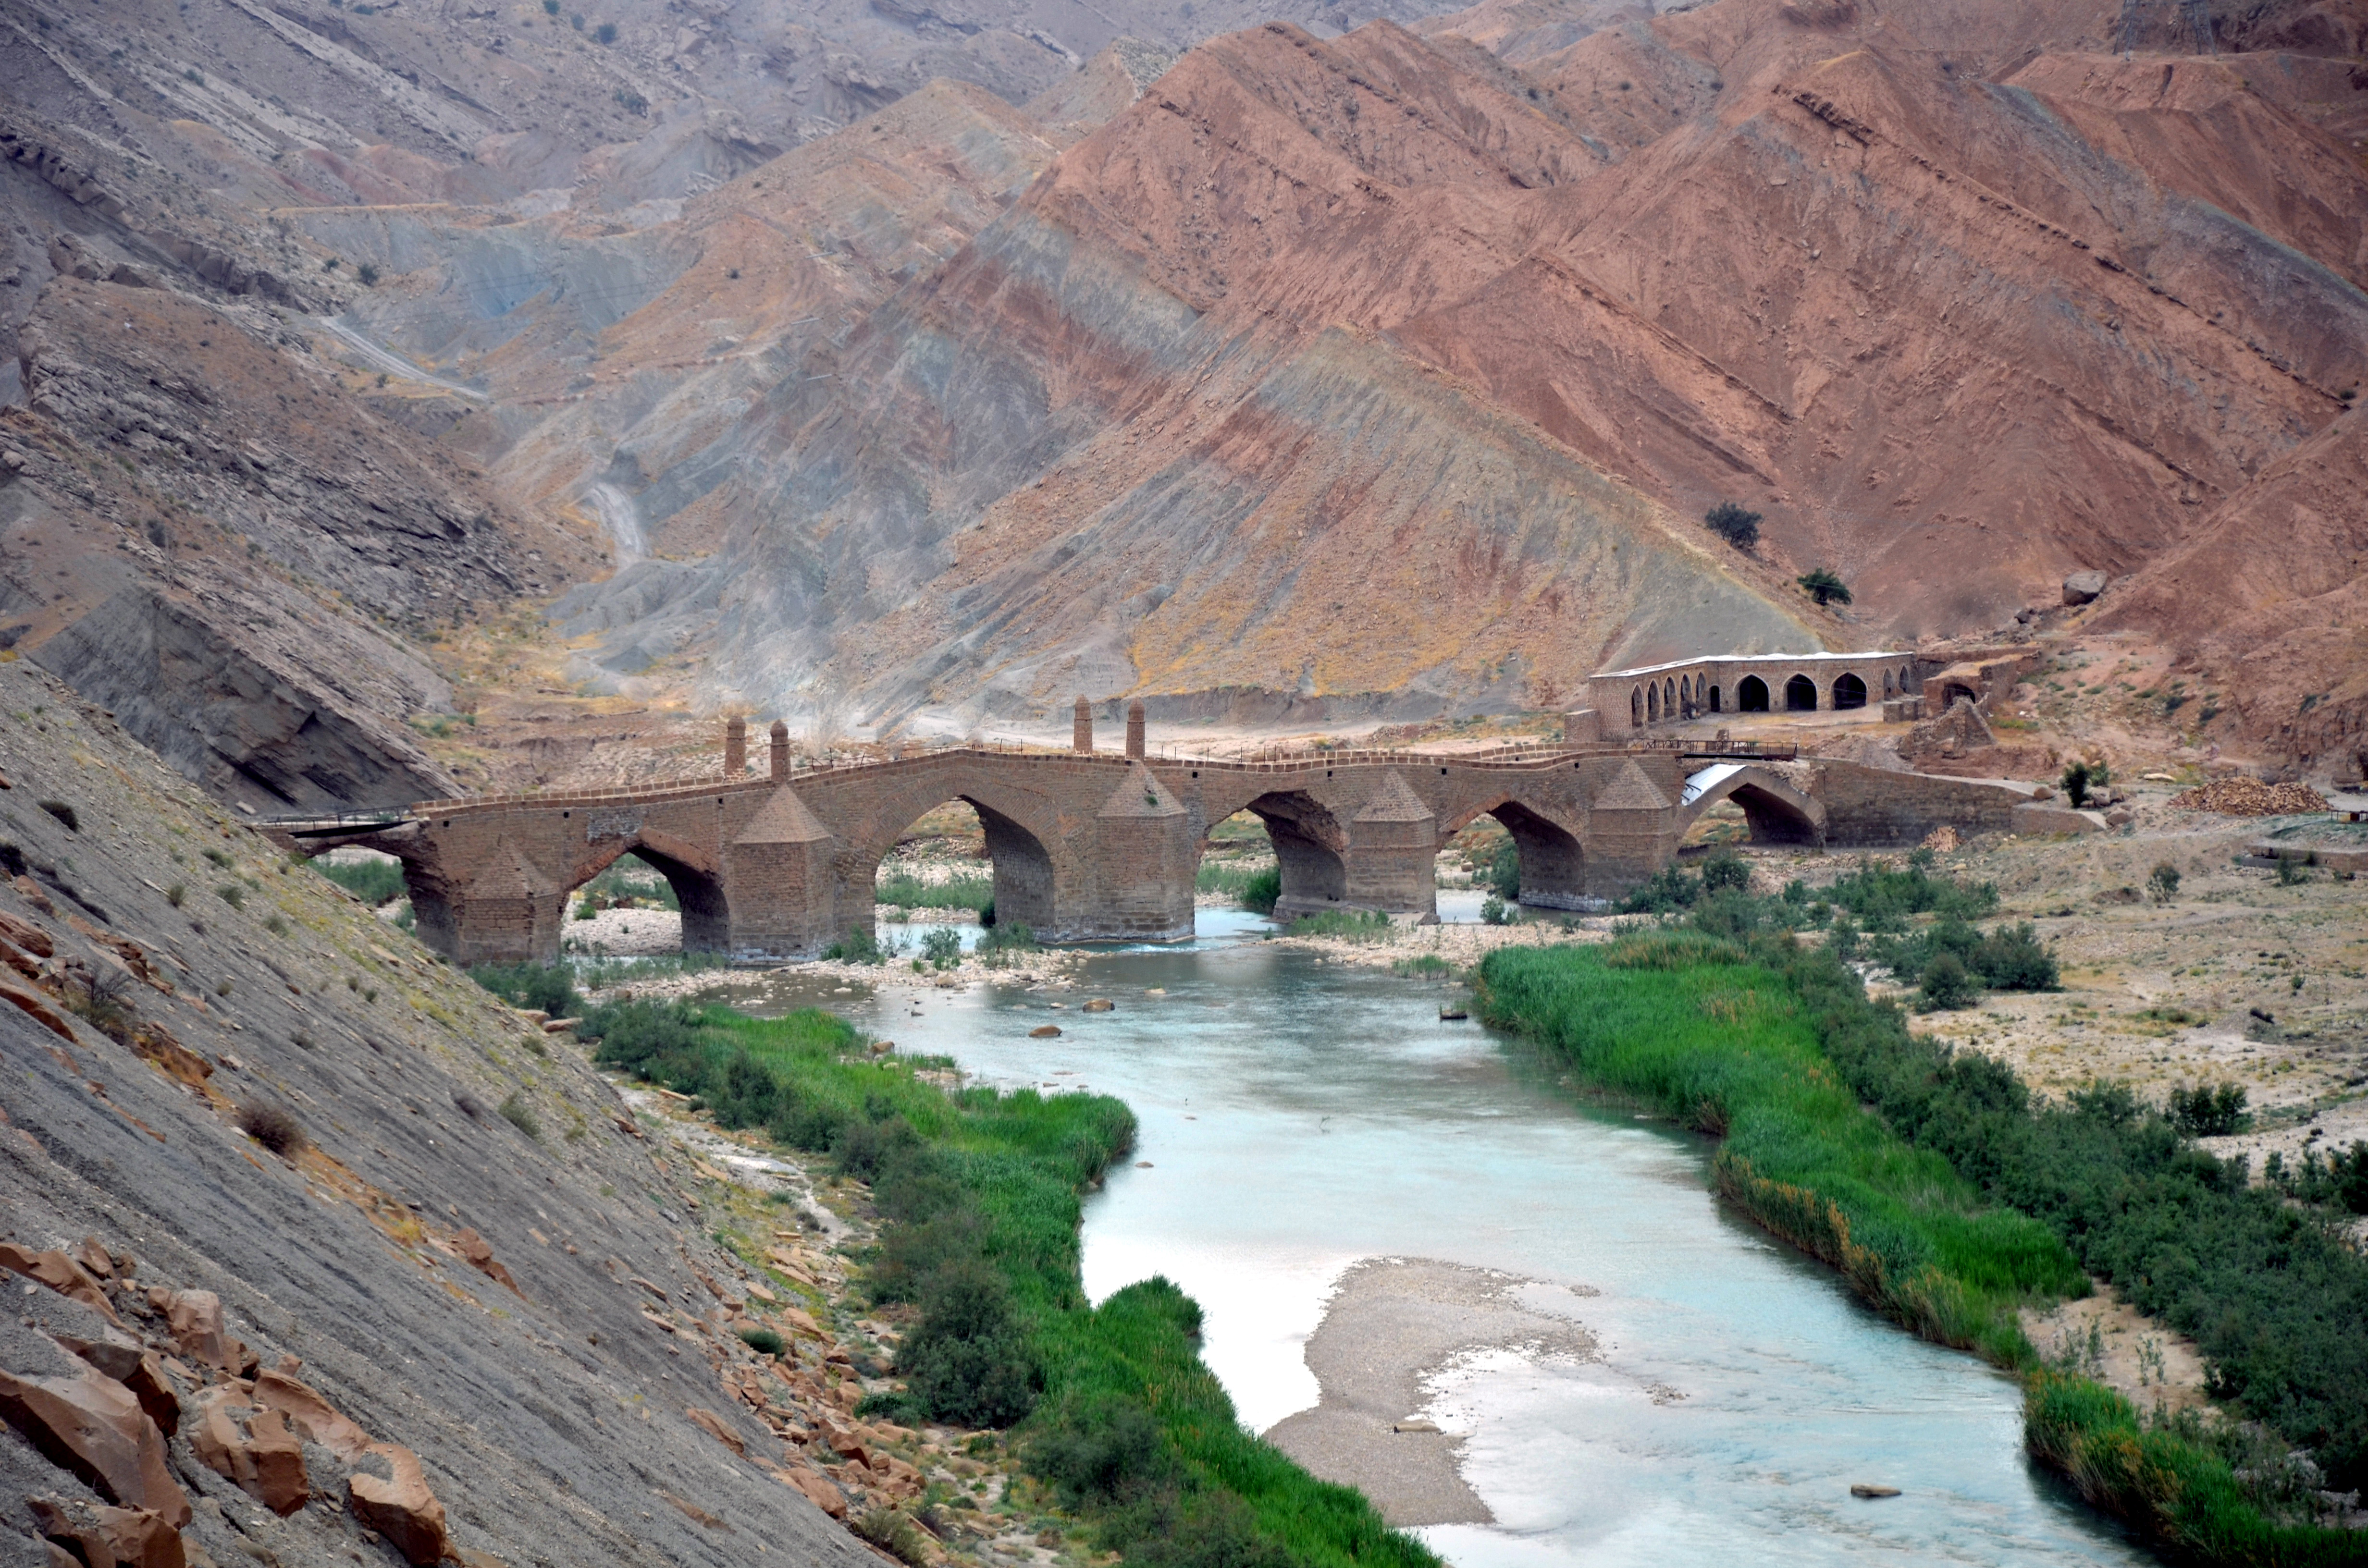 Moshir_Bridge_on_Dalaki_river_Borazjan_Iran.jpg